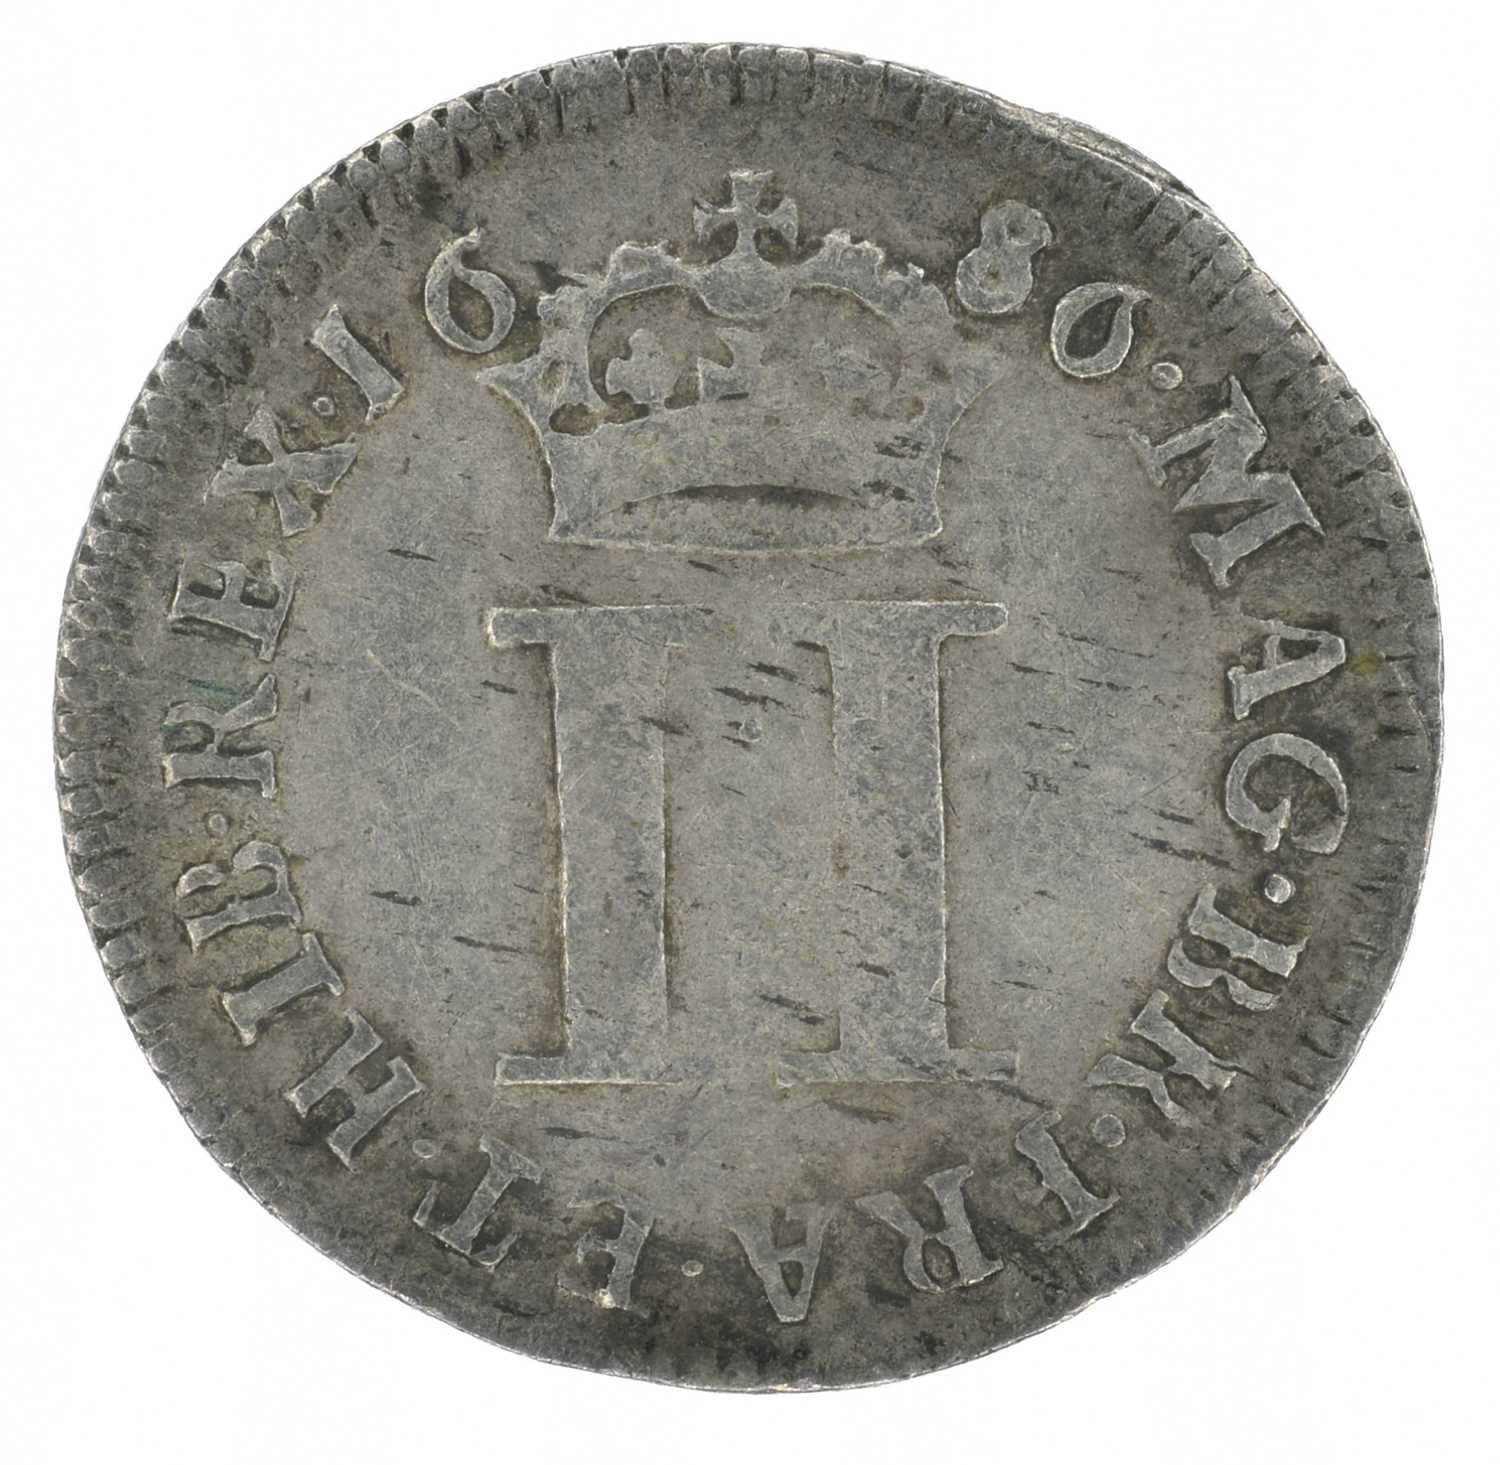 King James II, Twopence, 1686 IΛCOBVS. - Image 2 of 2